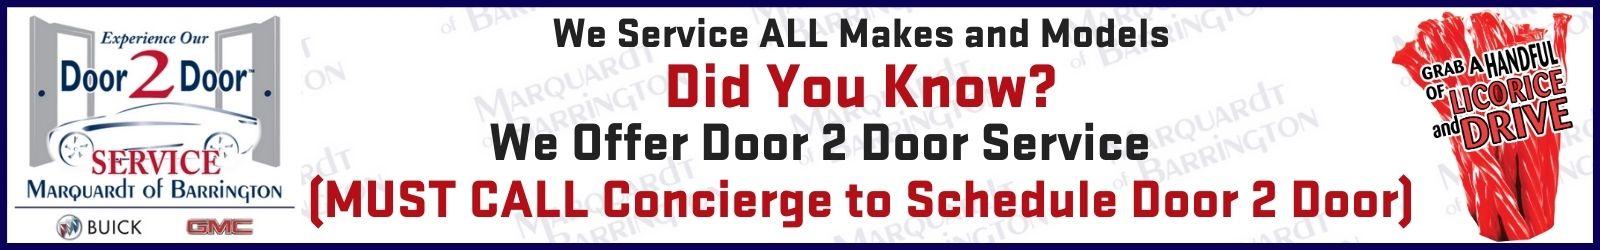 Service Banner - call for door 2 door